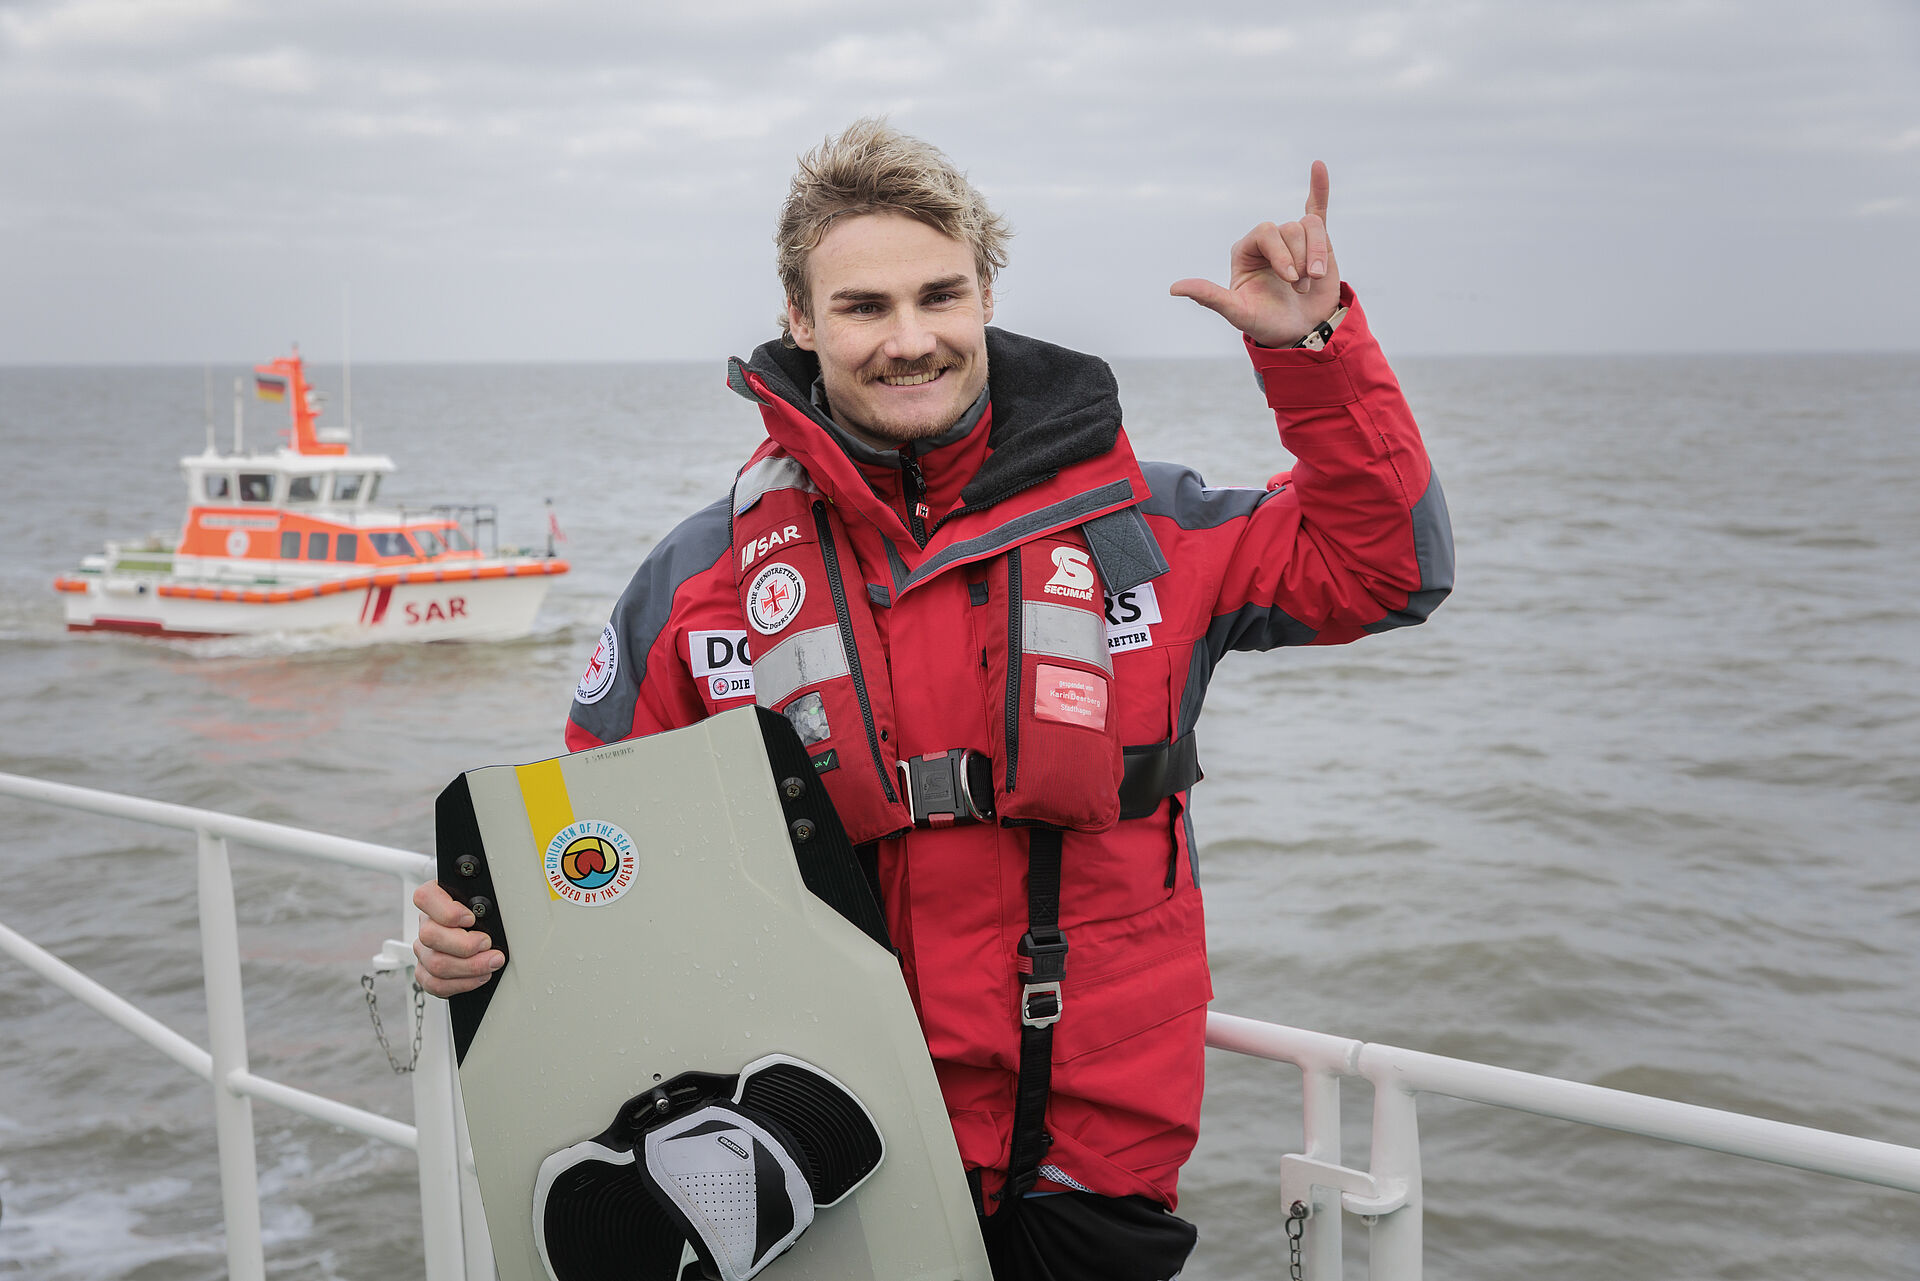 Kiteprofi steht mit seinem Board vor einer Reling eines Seenotrettungskreuzers, im Hintergrund fährt ein Seenotrettungsboot auf dem Wasser.